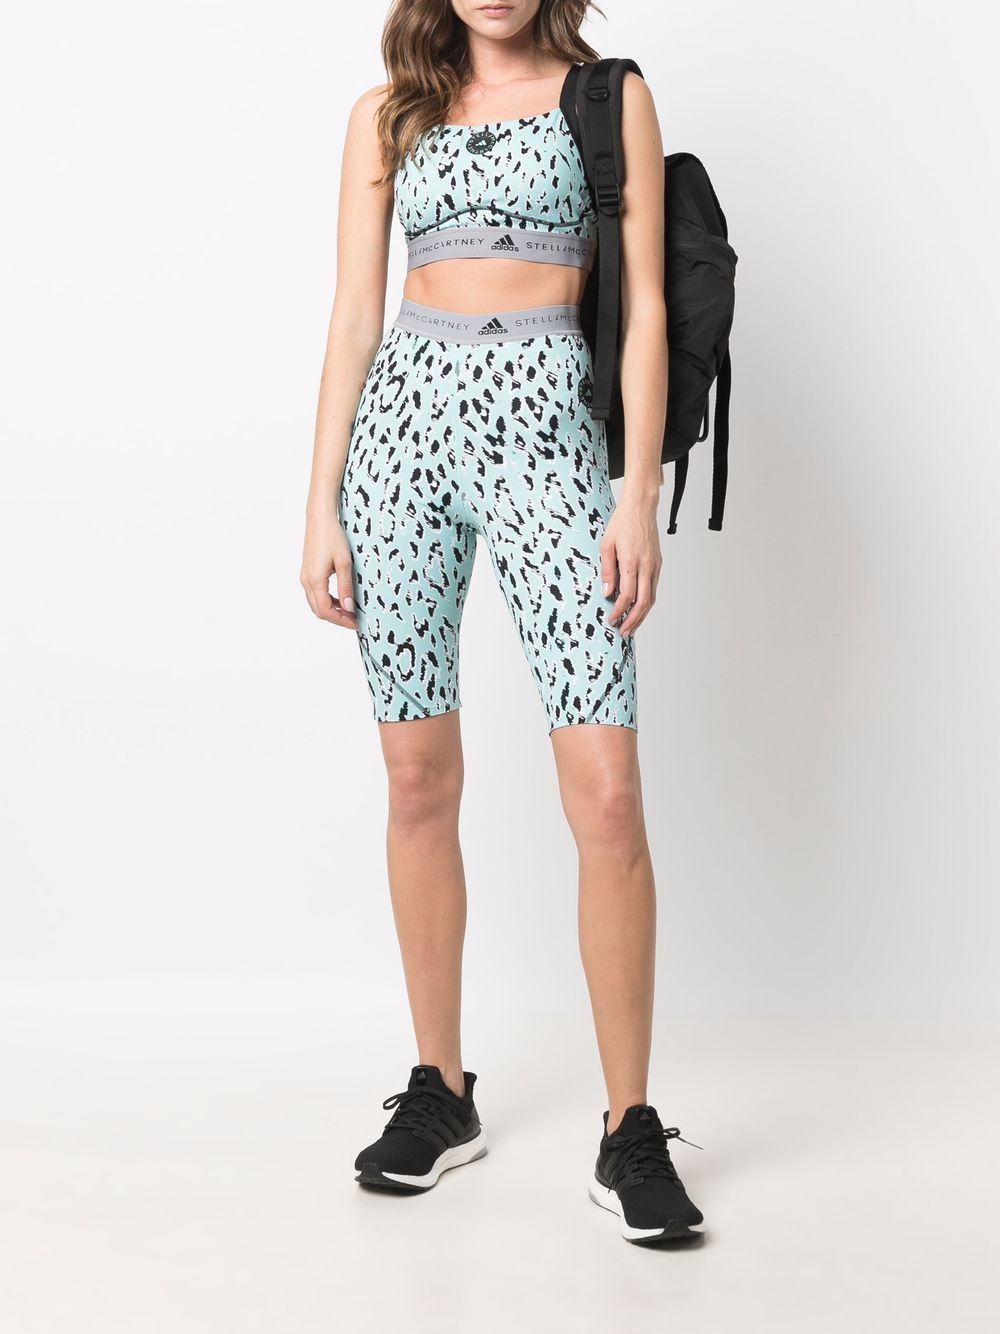 фото Adidas by stella mccartney облегающие шорты с леопардовым принтом